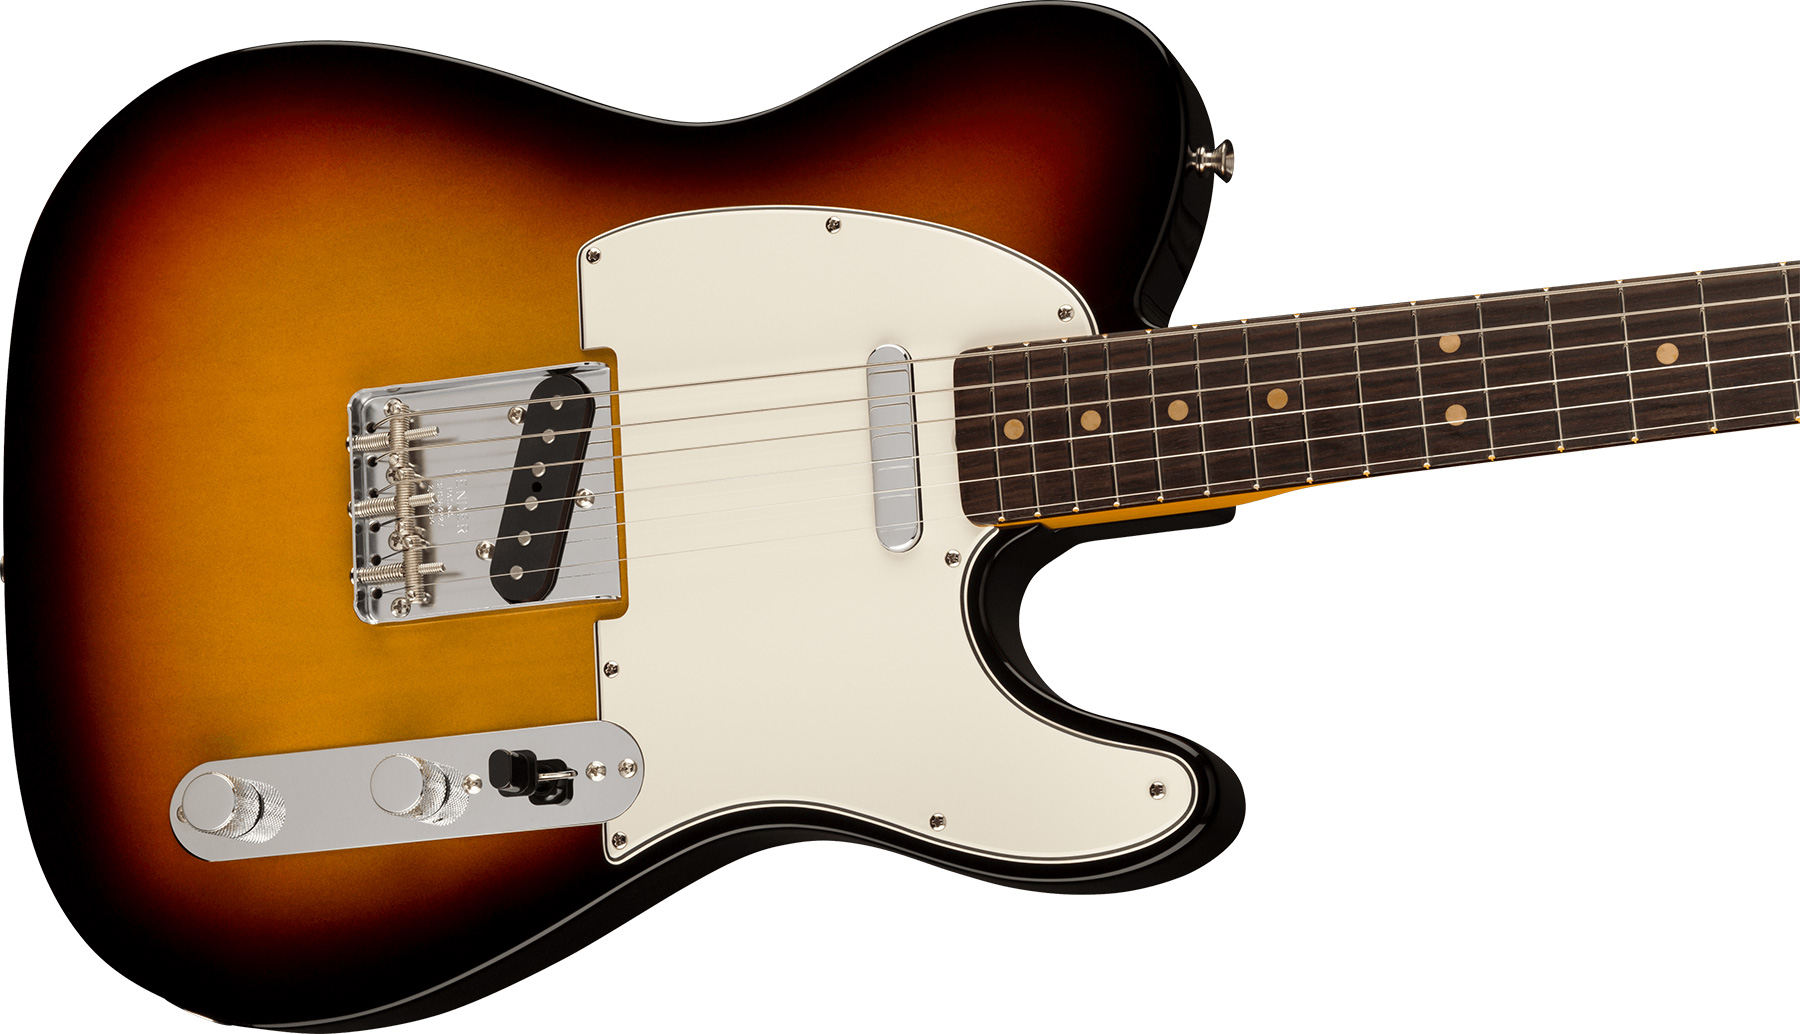 Fender Tele 1963 American Vintage Ii Usa 2s Ht Rw - 3-color Sunburst - Guitarra eléctrica con forma de tel - Variation 2